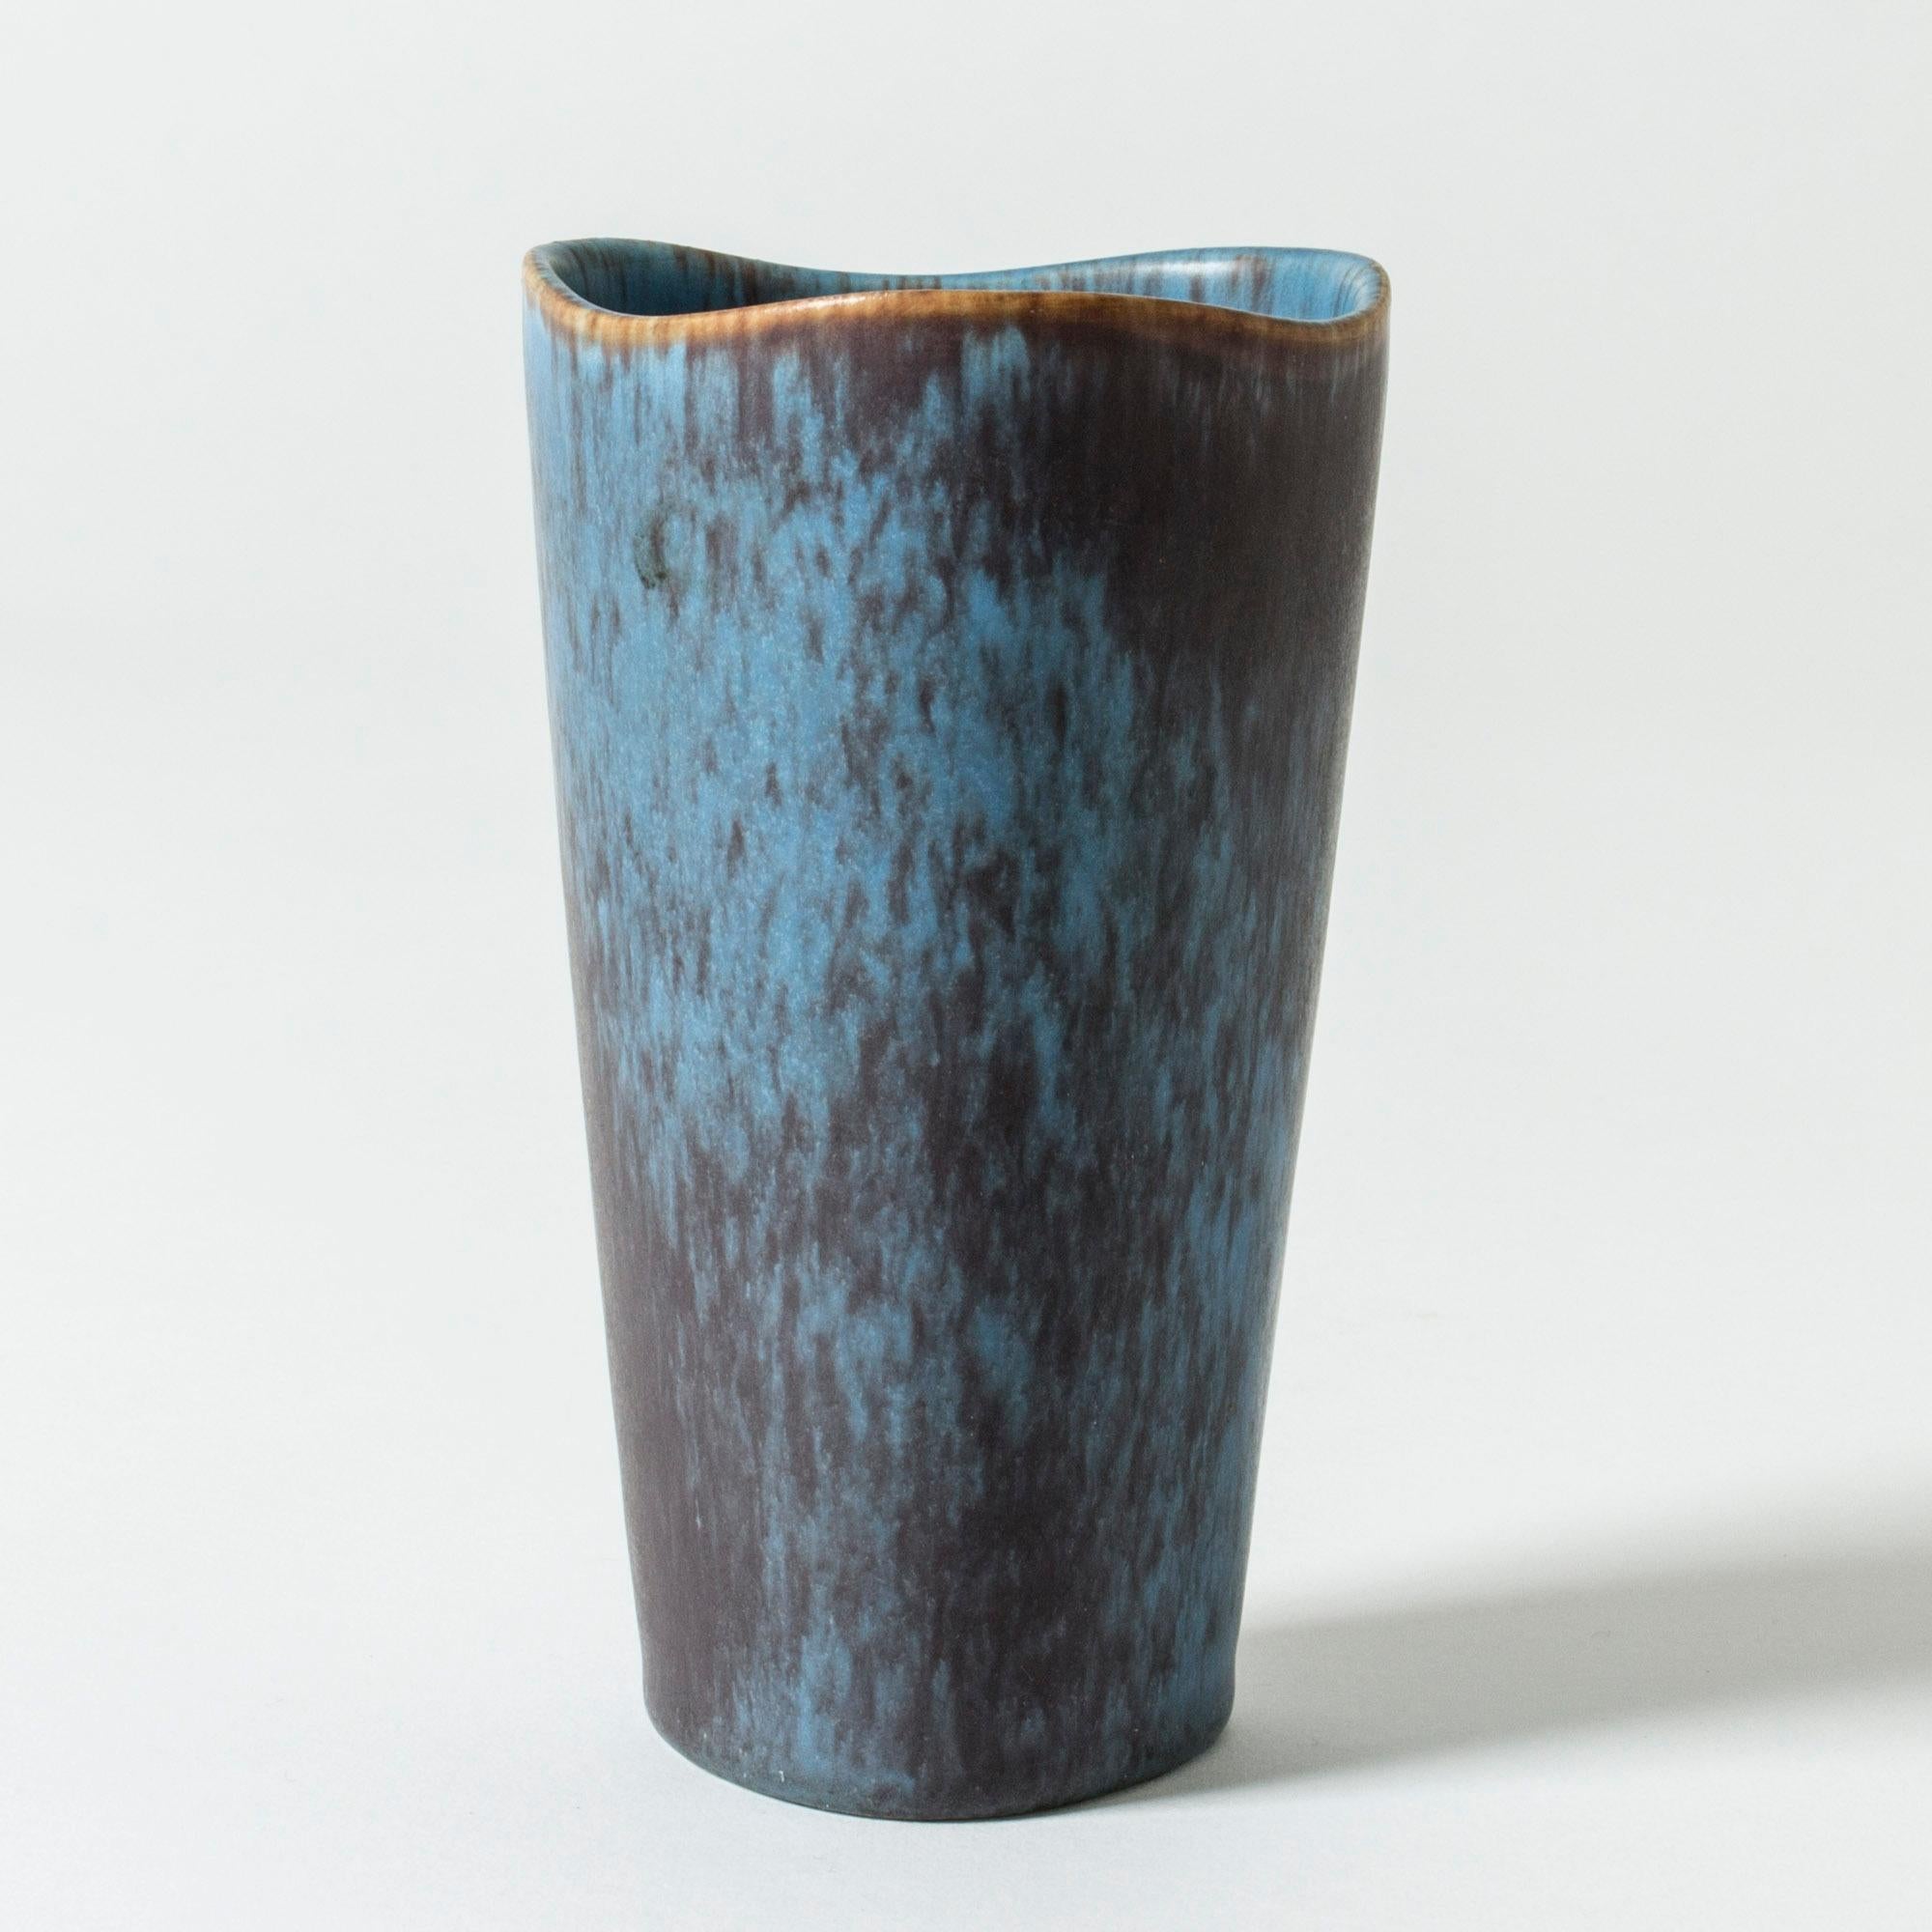 Vase aus Steingut von Gunnar Nylund in klarer Form. Der gewellte Rand lockert die Form auf. Leuchtend blaue Glasur mit violetten Streifen.

Gunnar Nylund war einer der einflussreichsten Keramiker und Designer der schwedischen Mitte des